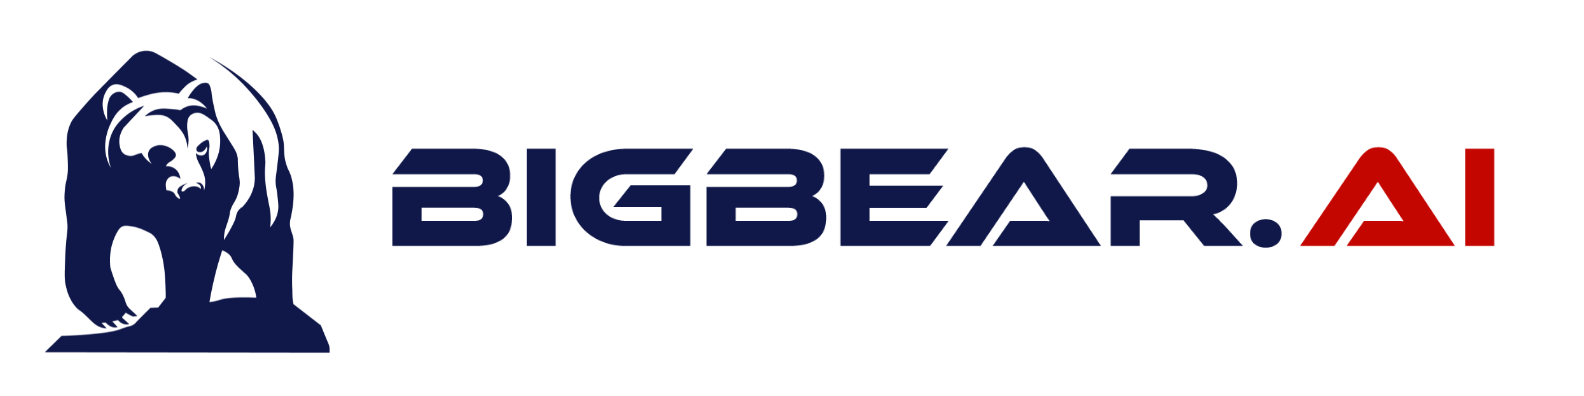 BigBear.ai Company Logo